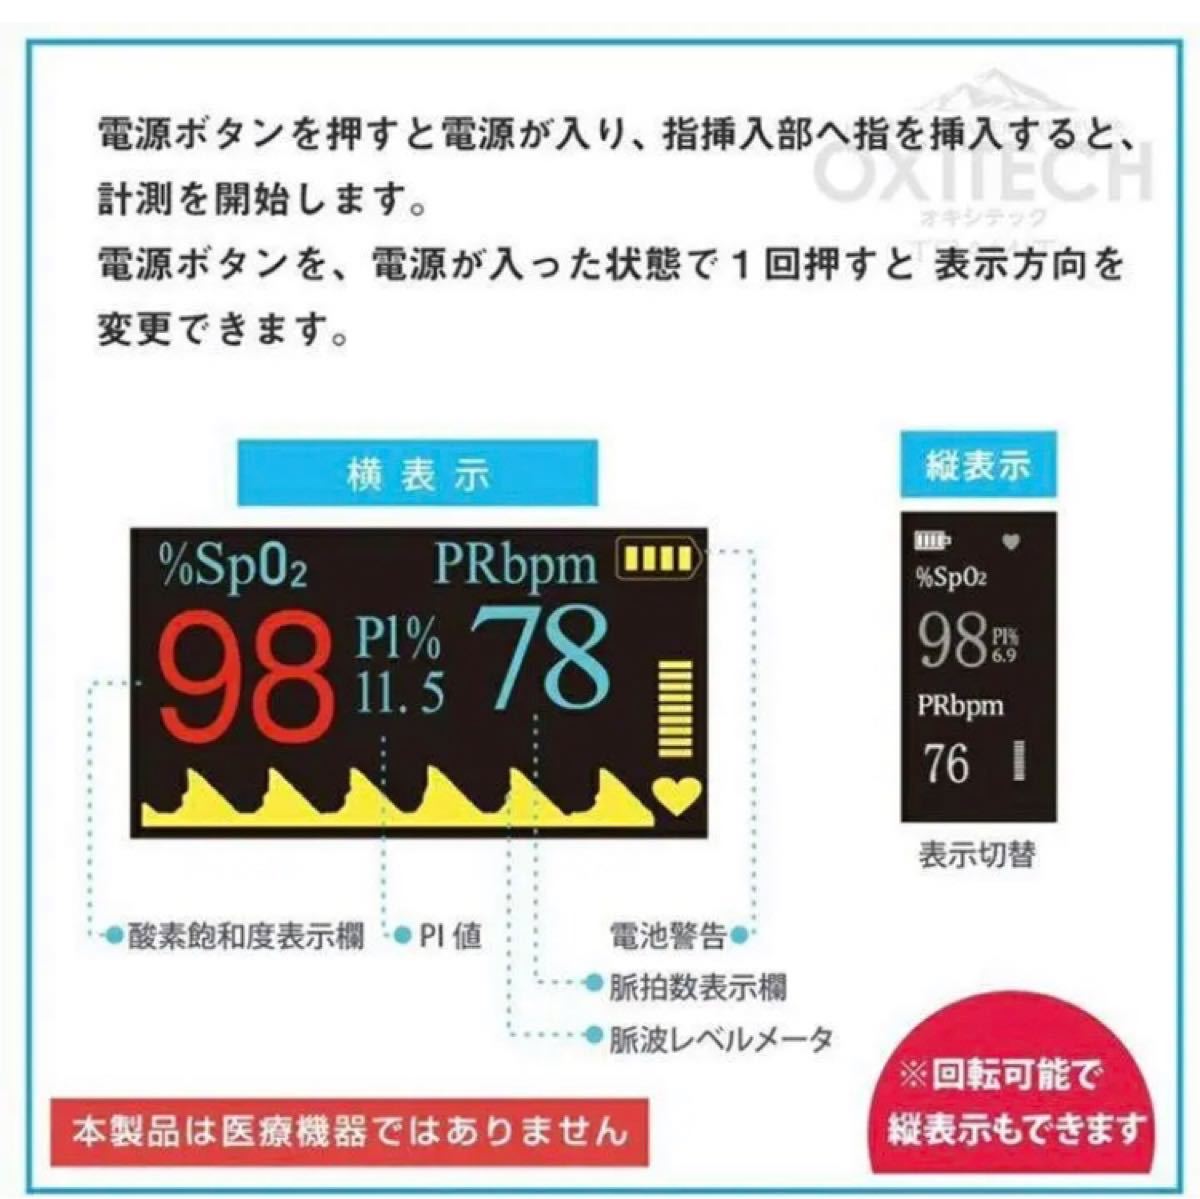 オキツテツク 血中酸素濃度計 測定器 スマートウォッチ 血圧測定 iOS 多機能 歩数計 心拍計